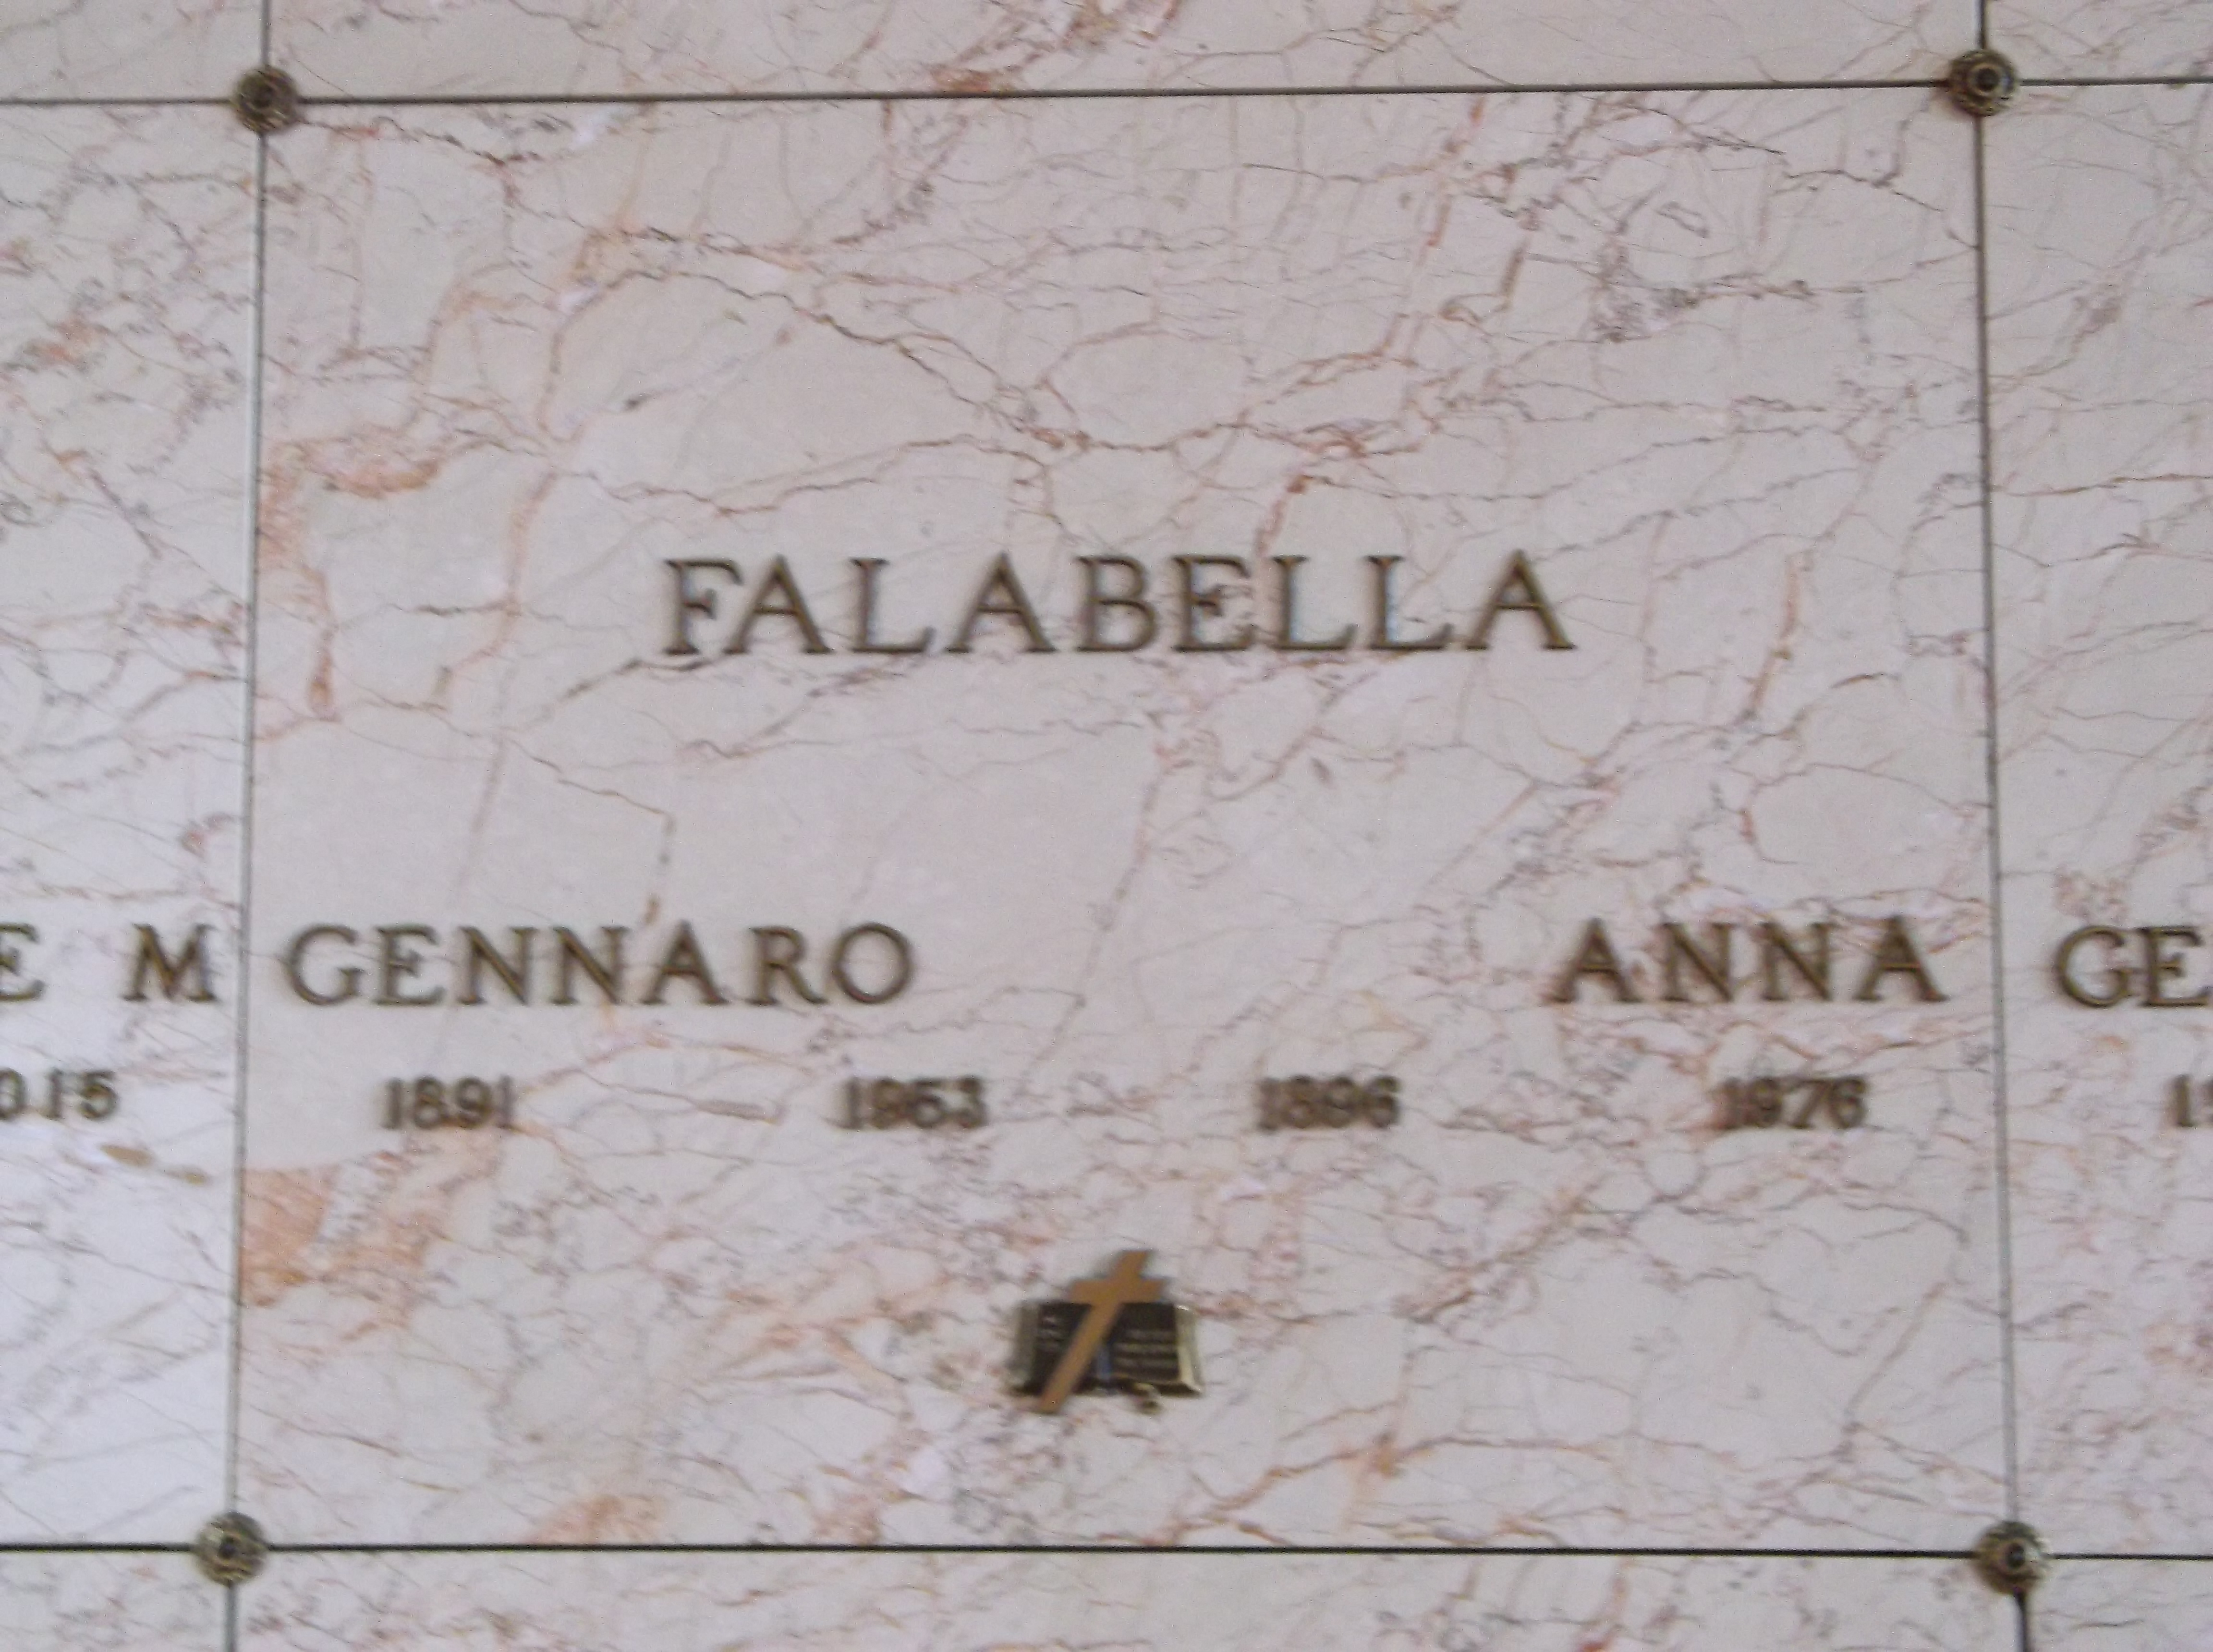 Gennaro Falabella